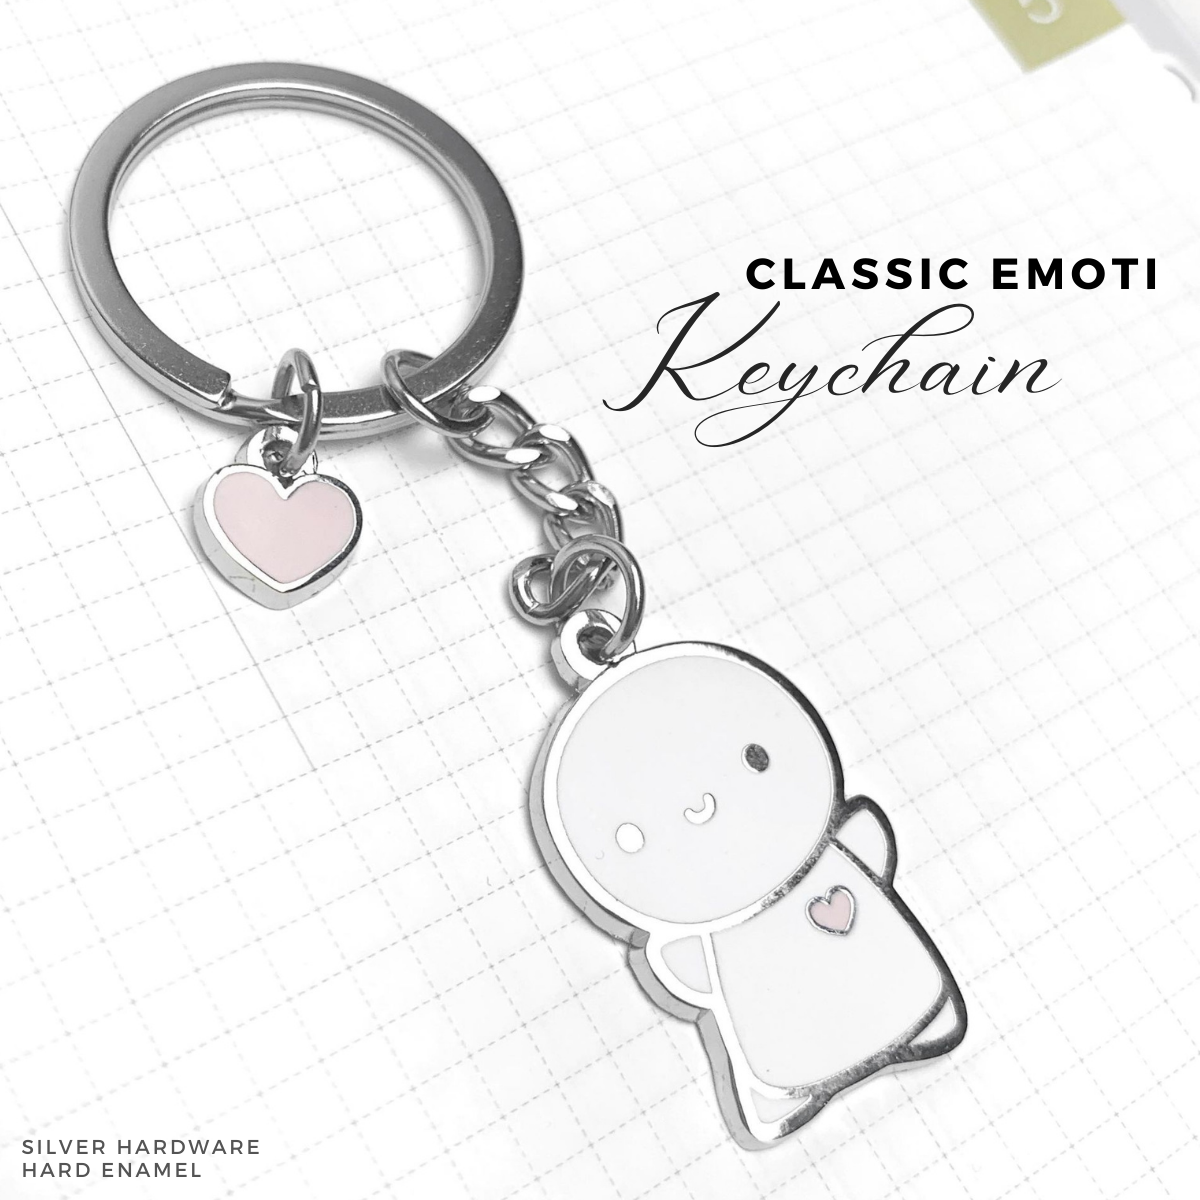 Classic Emoti Keychain